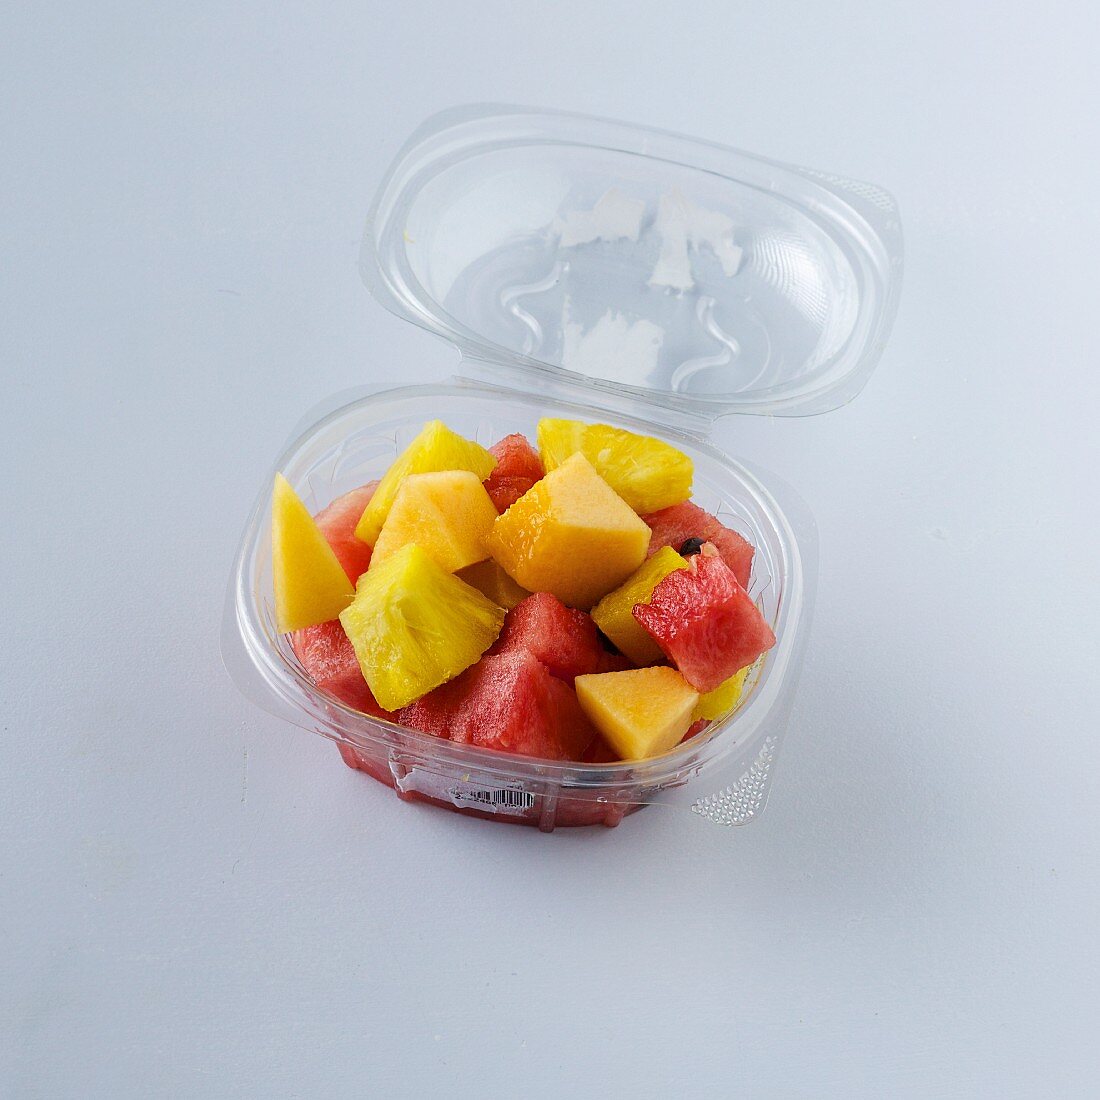 Fruit salad to takeaway